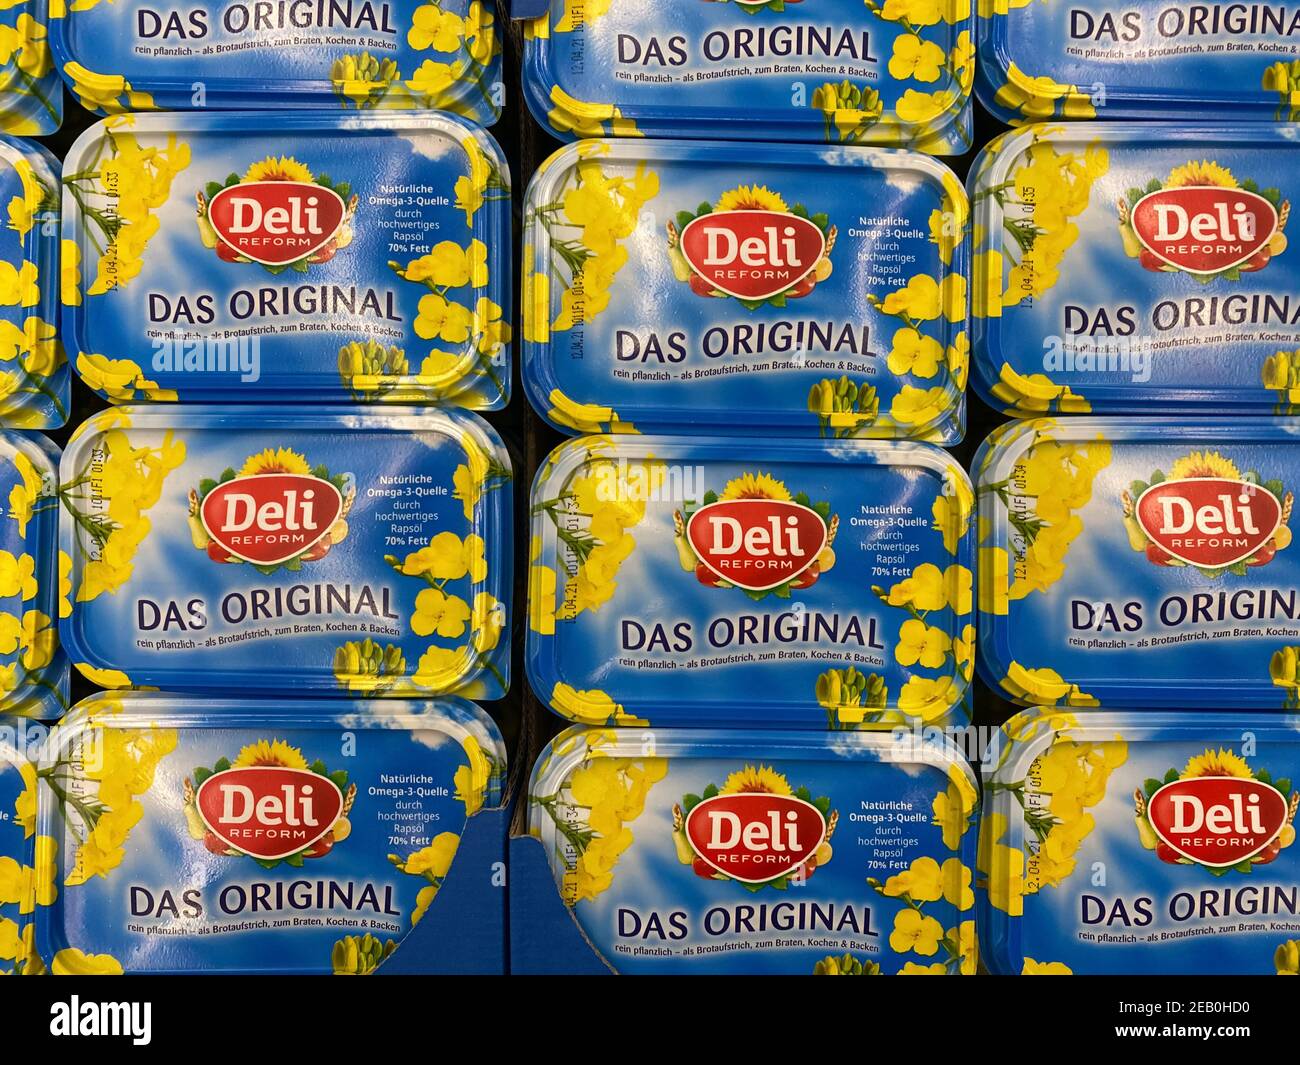 Viersen, Allemagne - février 9. 2021: Gros plan des boîtes sans gluten de la margarine de réforme de deli dans le rayon du supermarché allemand (accent sur les emballages au centre) Banque D'Images